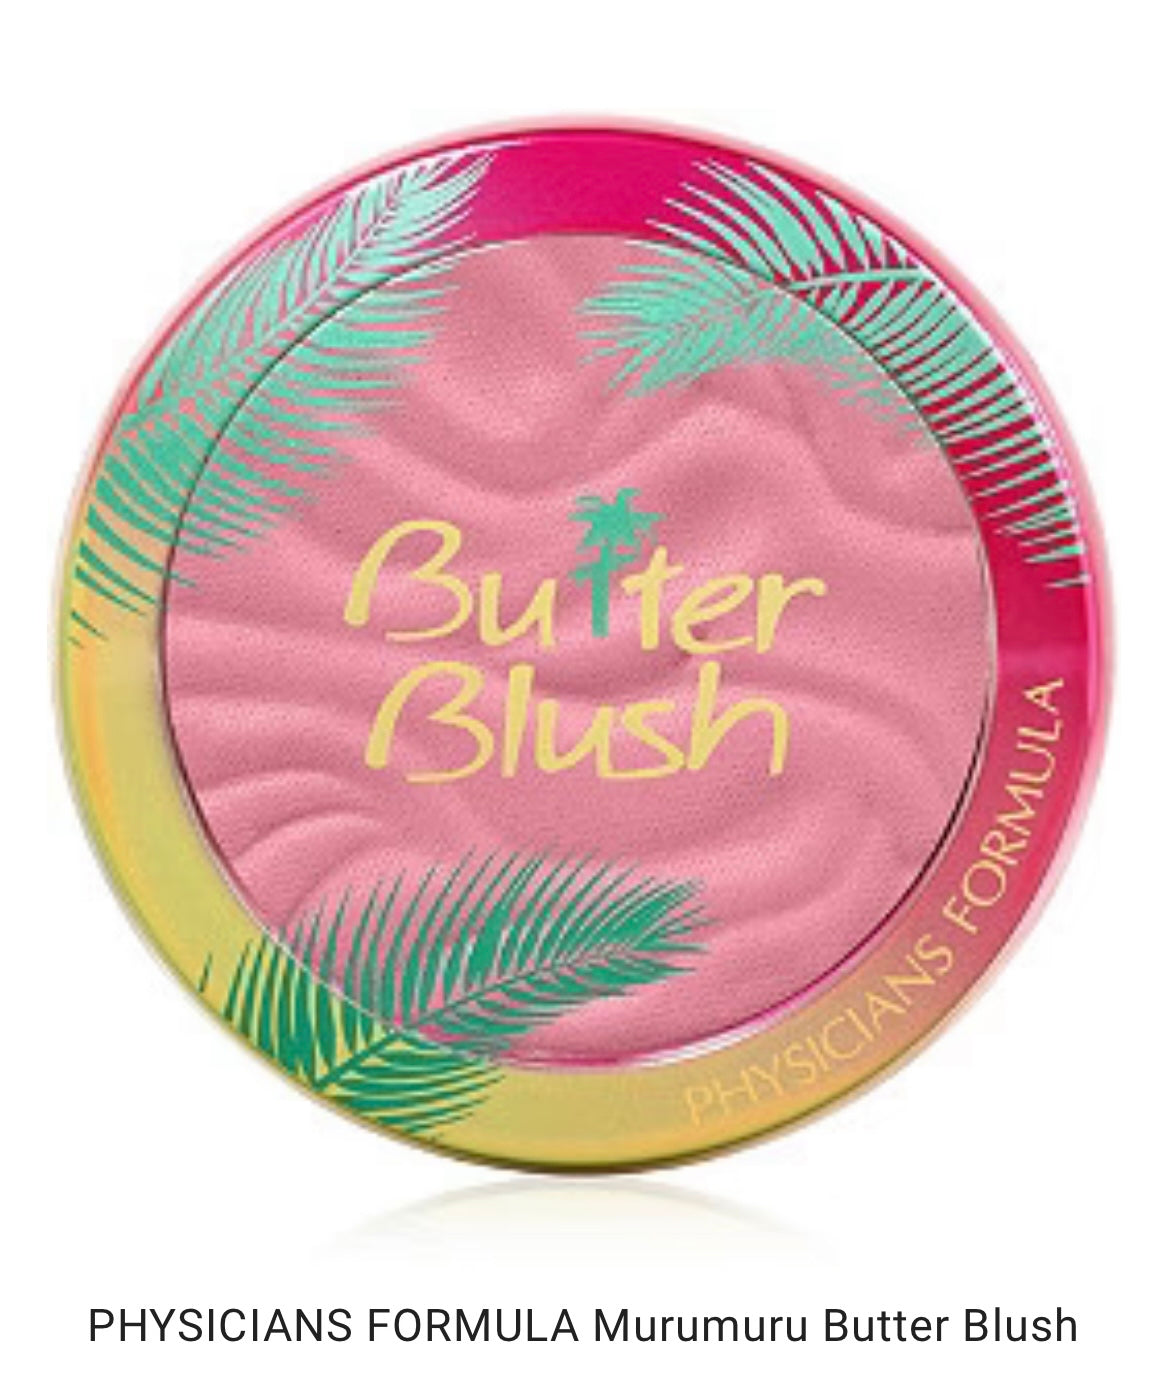 Butter blush